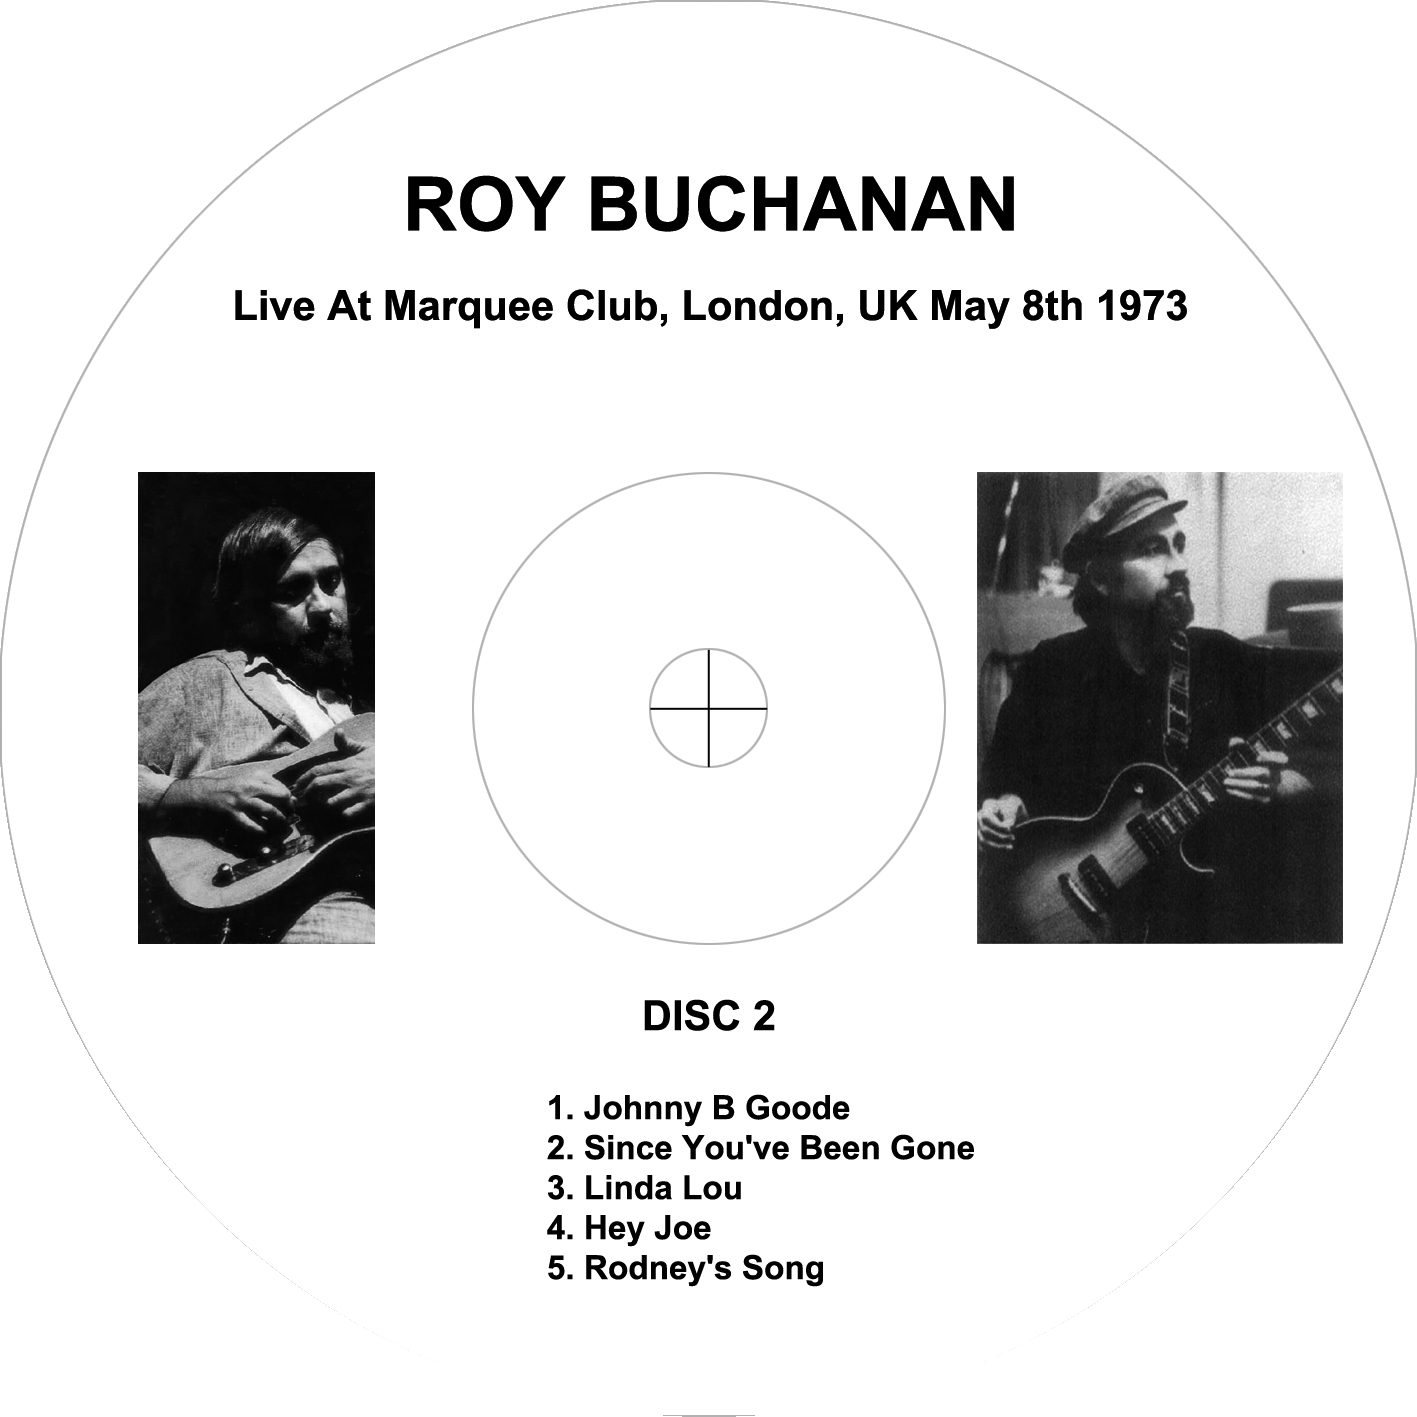 roy buchanan 1973 05 08 marquee club london enlarged label 2